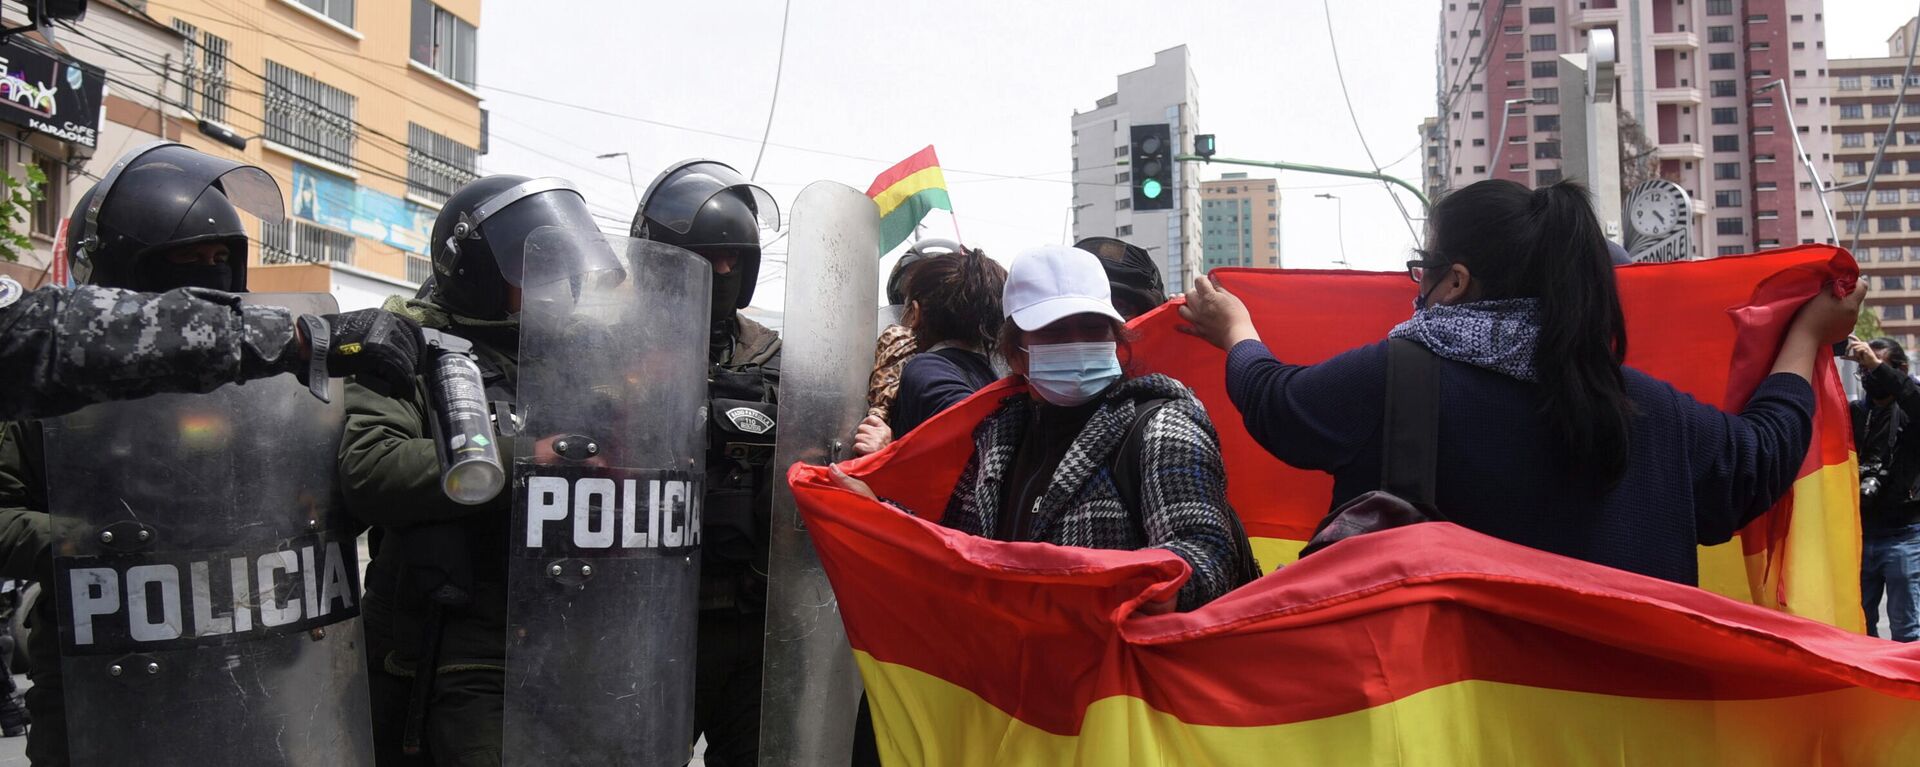 Protestas en Bolivia - Sputnik Mundo, 1920, 27.10.2021